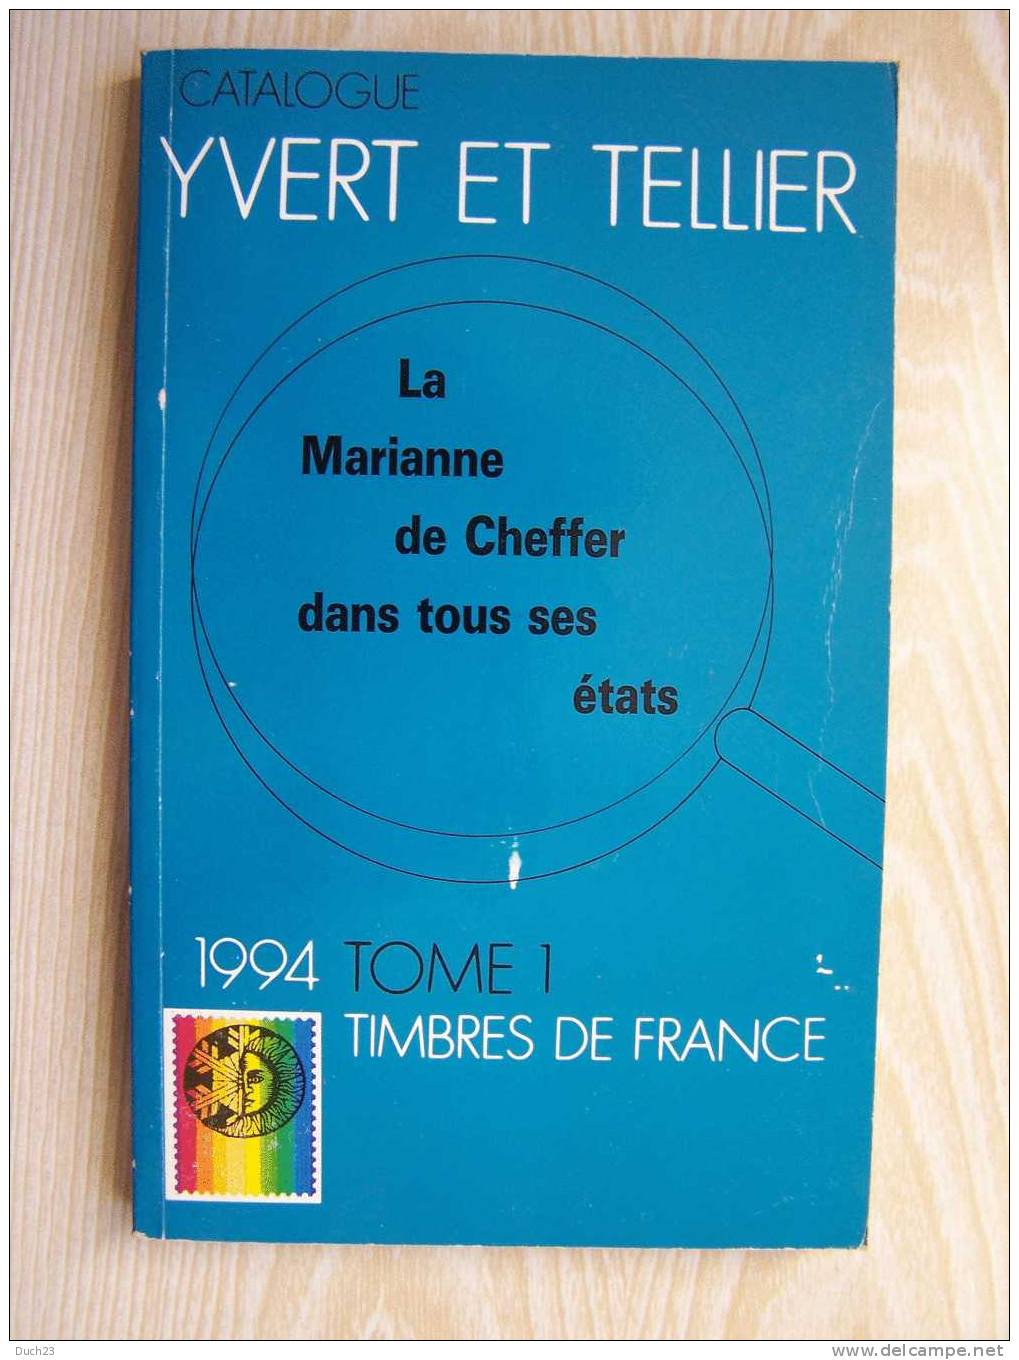 CATALOGUE DE COTATION YVERT ET TELLIER ANNEE 1994 TOME 1   TRES BON ETAT   REF CD - Francia